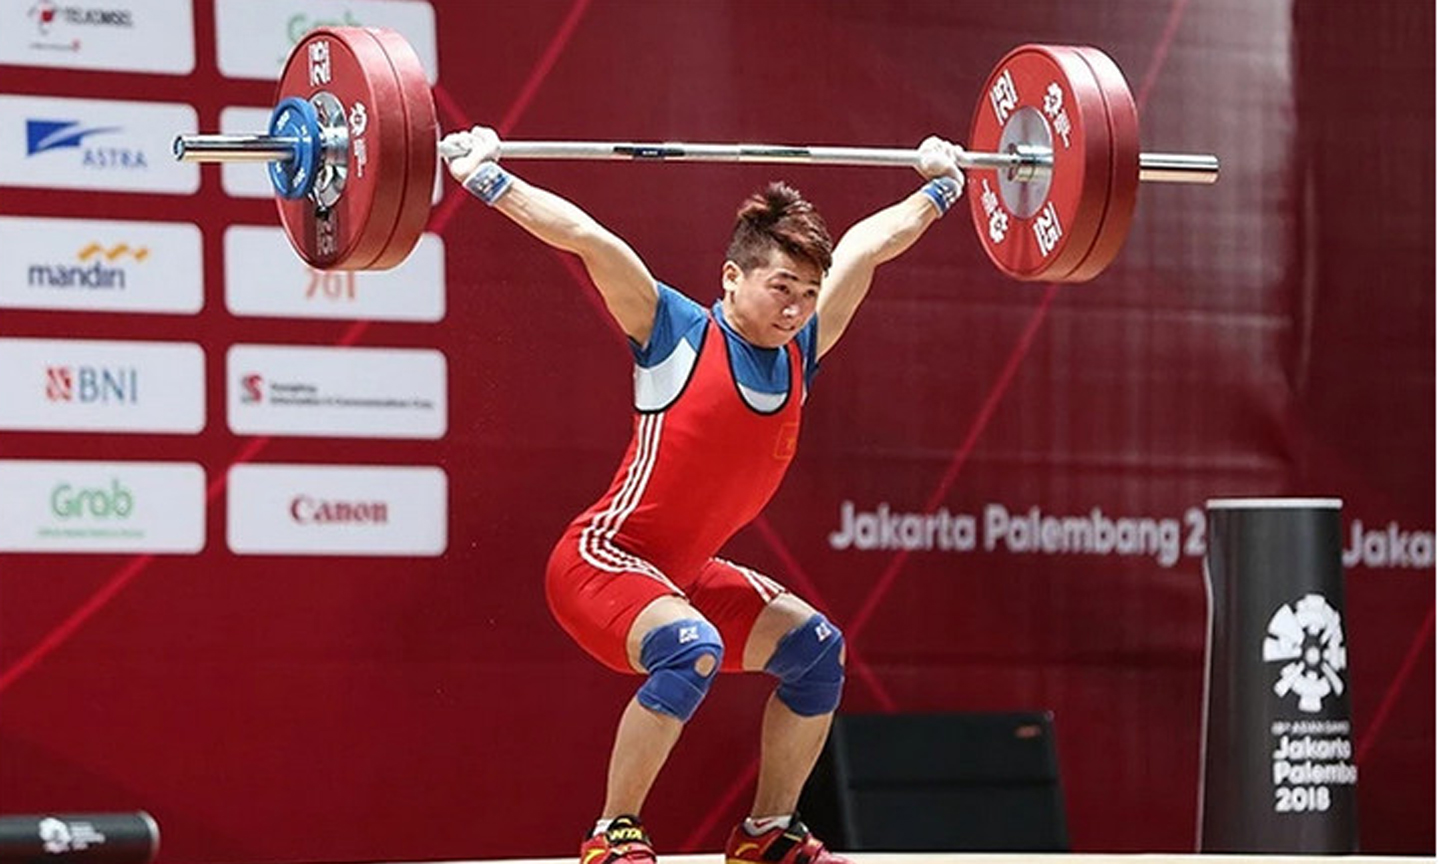 Vận động viên cử tạ Trịnh Văn Vinh được kỳ vọng giành huy chương tại Olympic Paris 2024. (Ảnh DT)